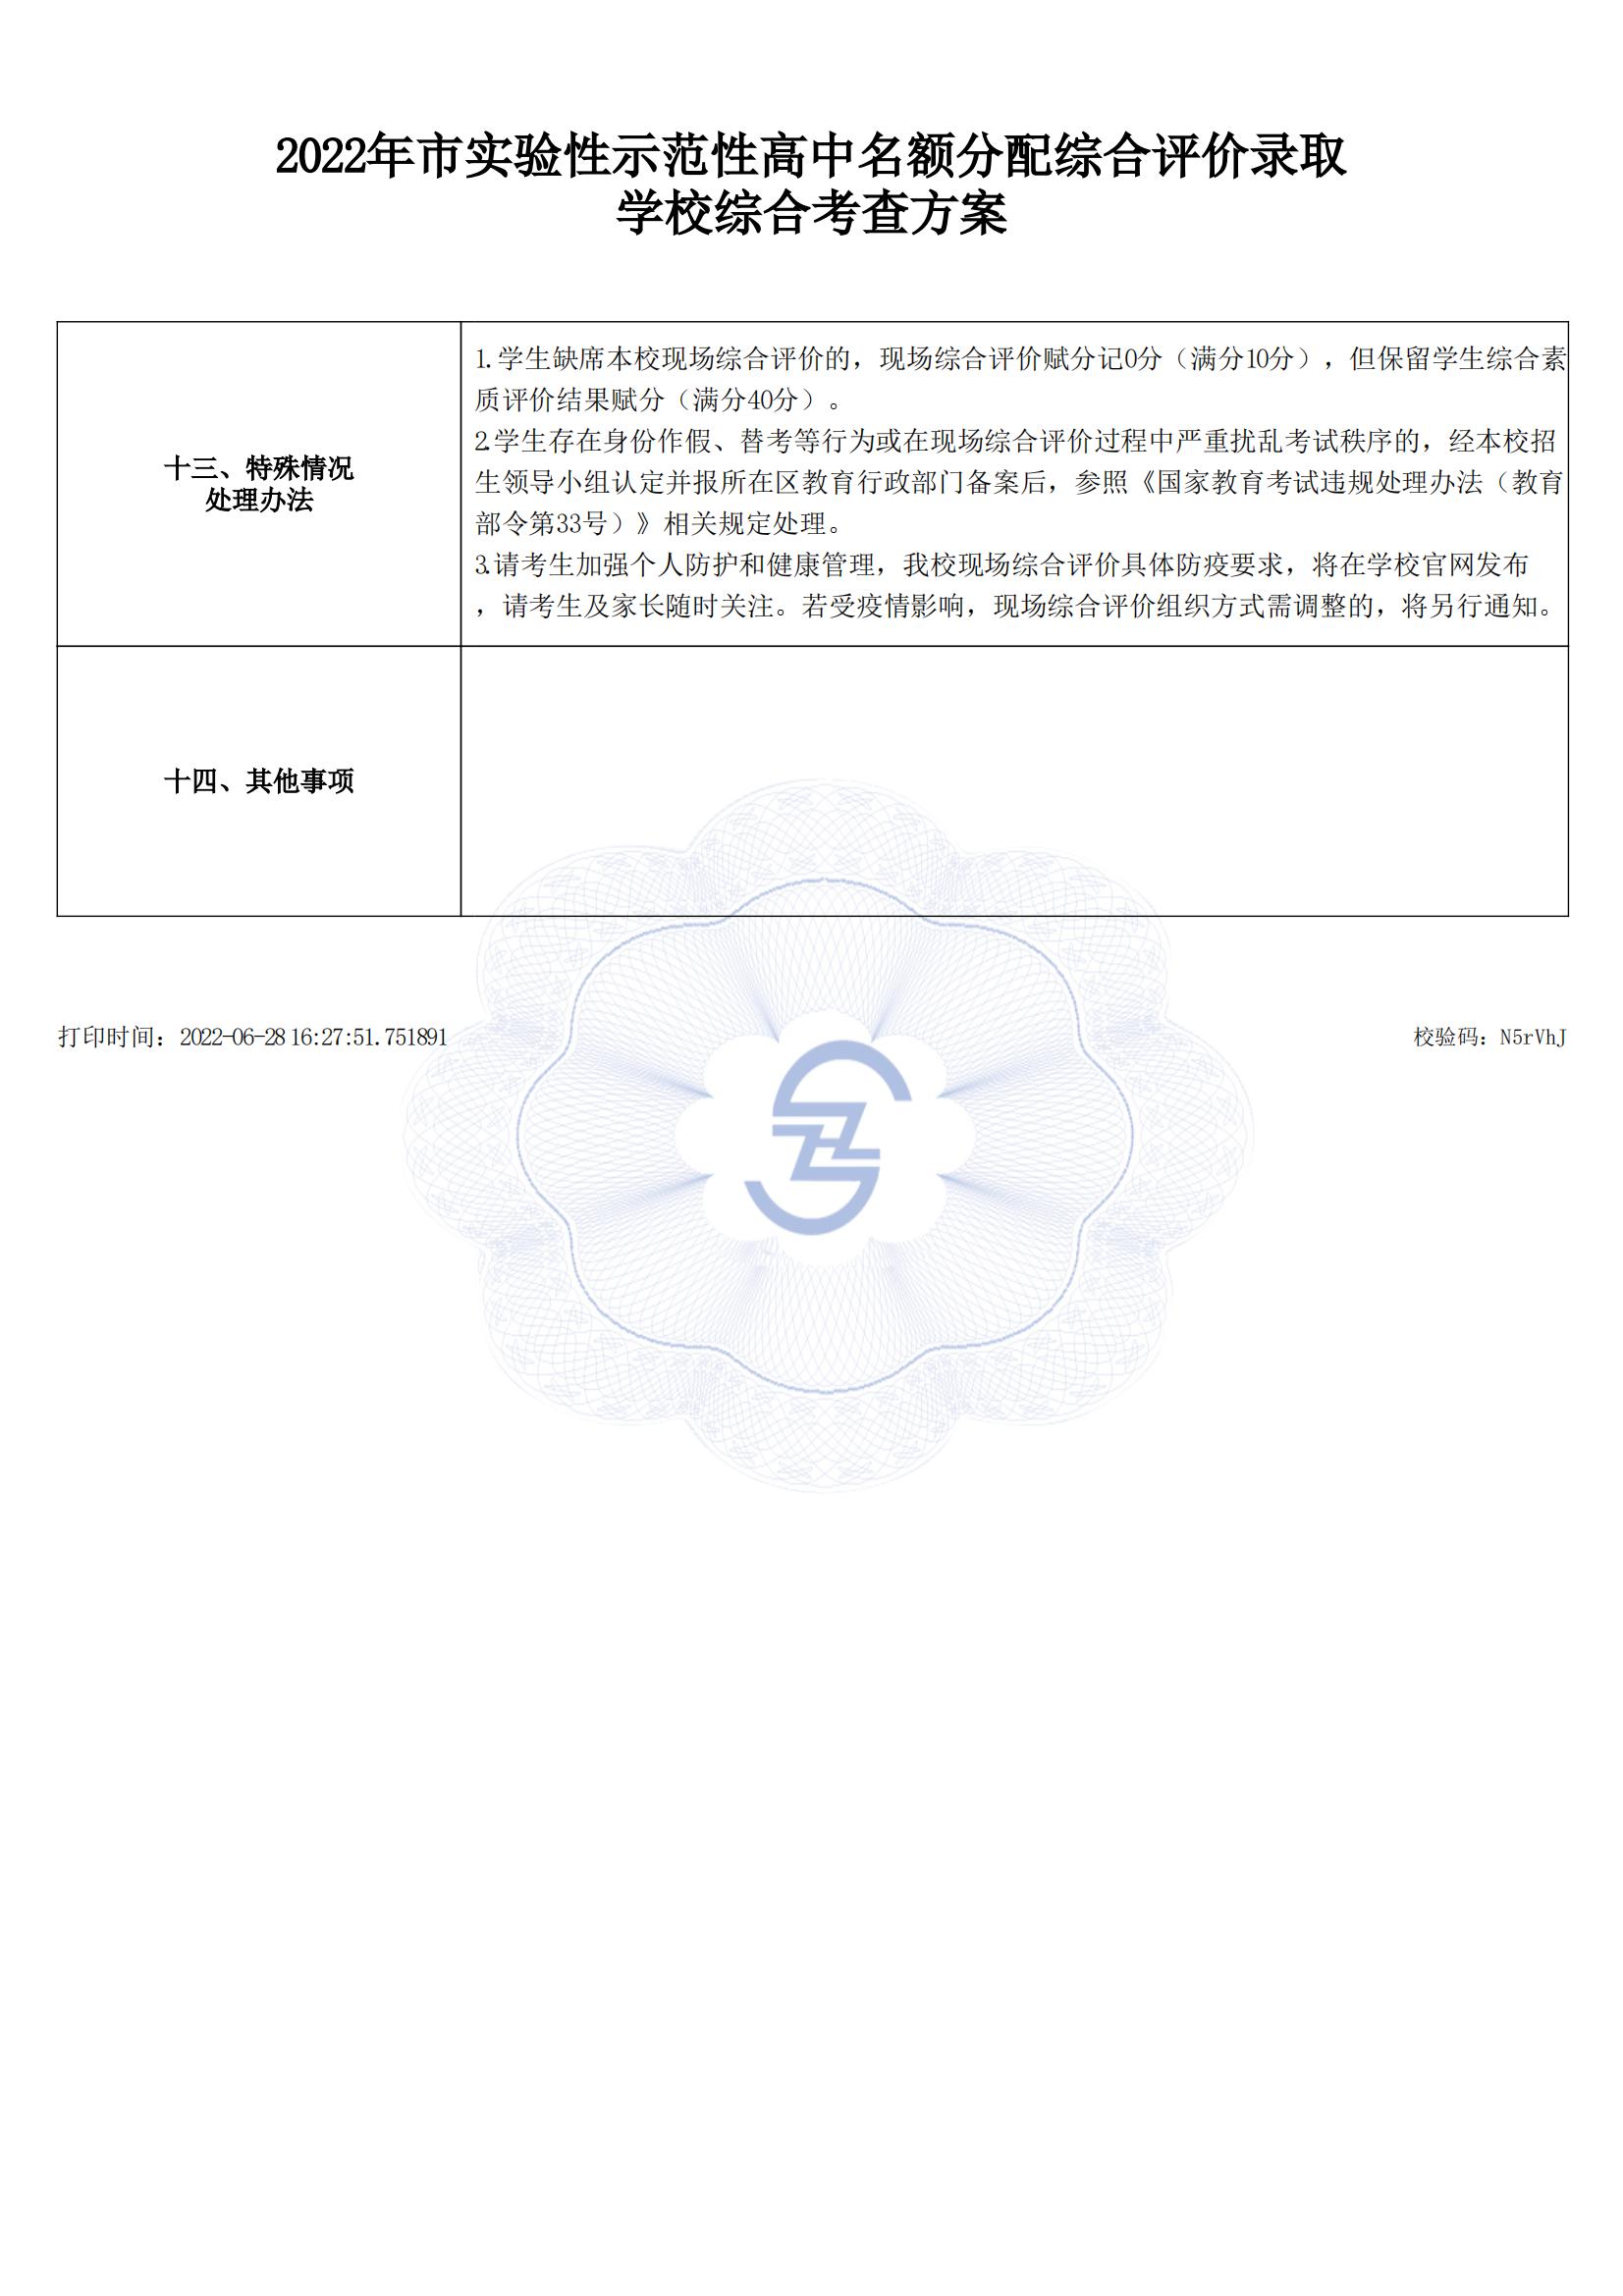 【公示】2022年上海市实验学校名额分配综合评价录取方案_02.jpg